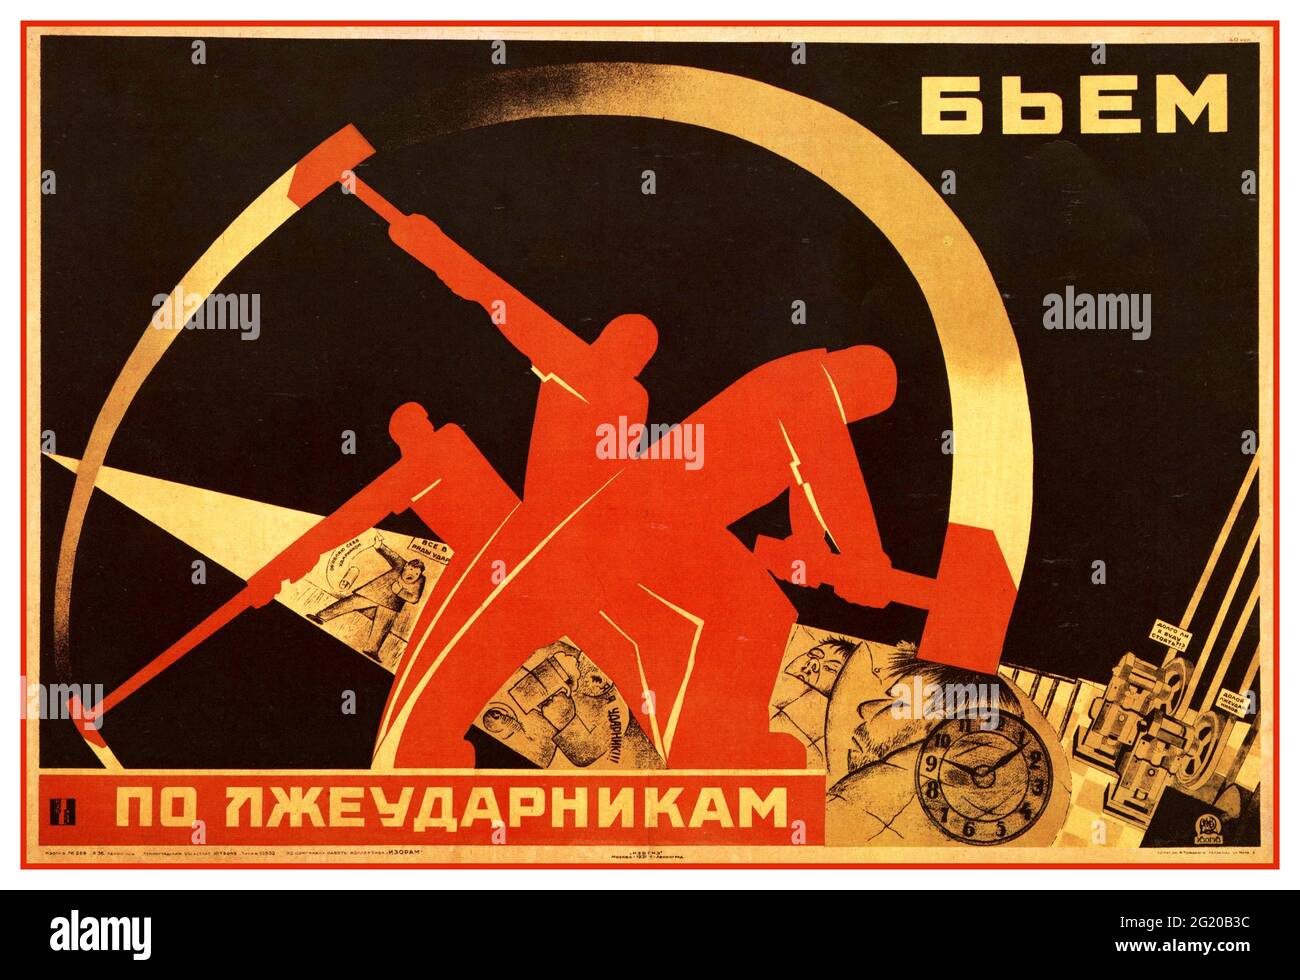 Affiche de propagande soviétique russe des années 1930 nous frappons les travailleurs de Pseudo-Shock (1931) /: Affiches de la guerre et de la révolution Moscou Russie Union soviétique Banque D'Images